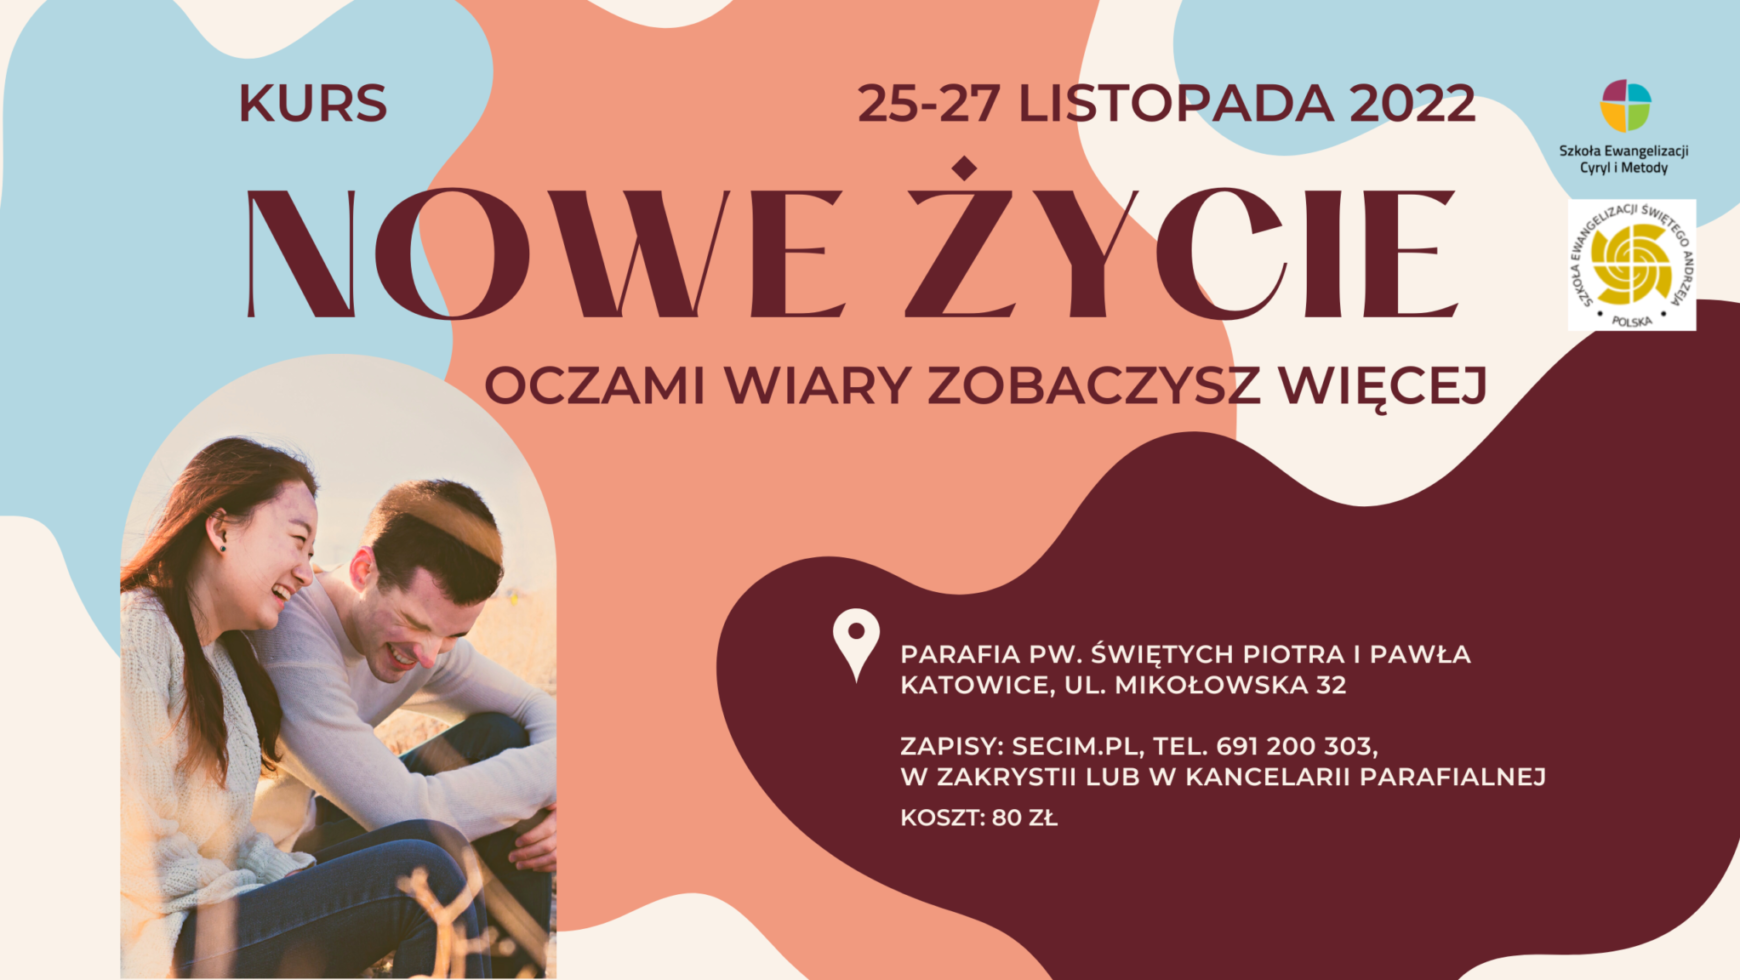 Kurs Nowe Życie, Katowice 25-27 listopada